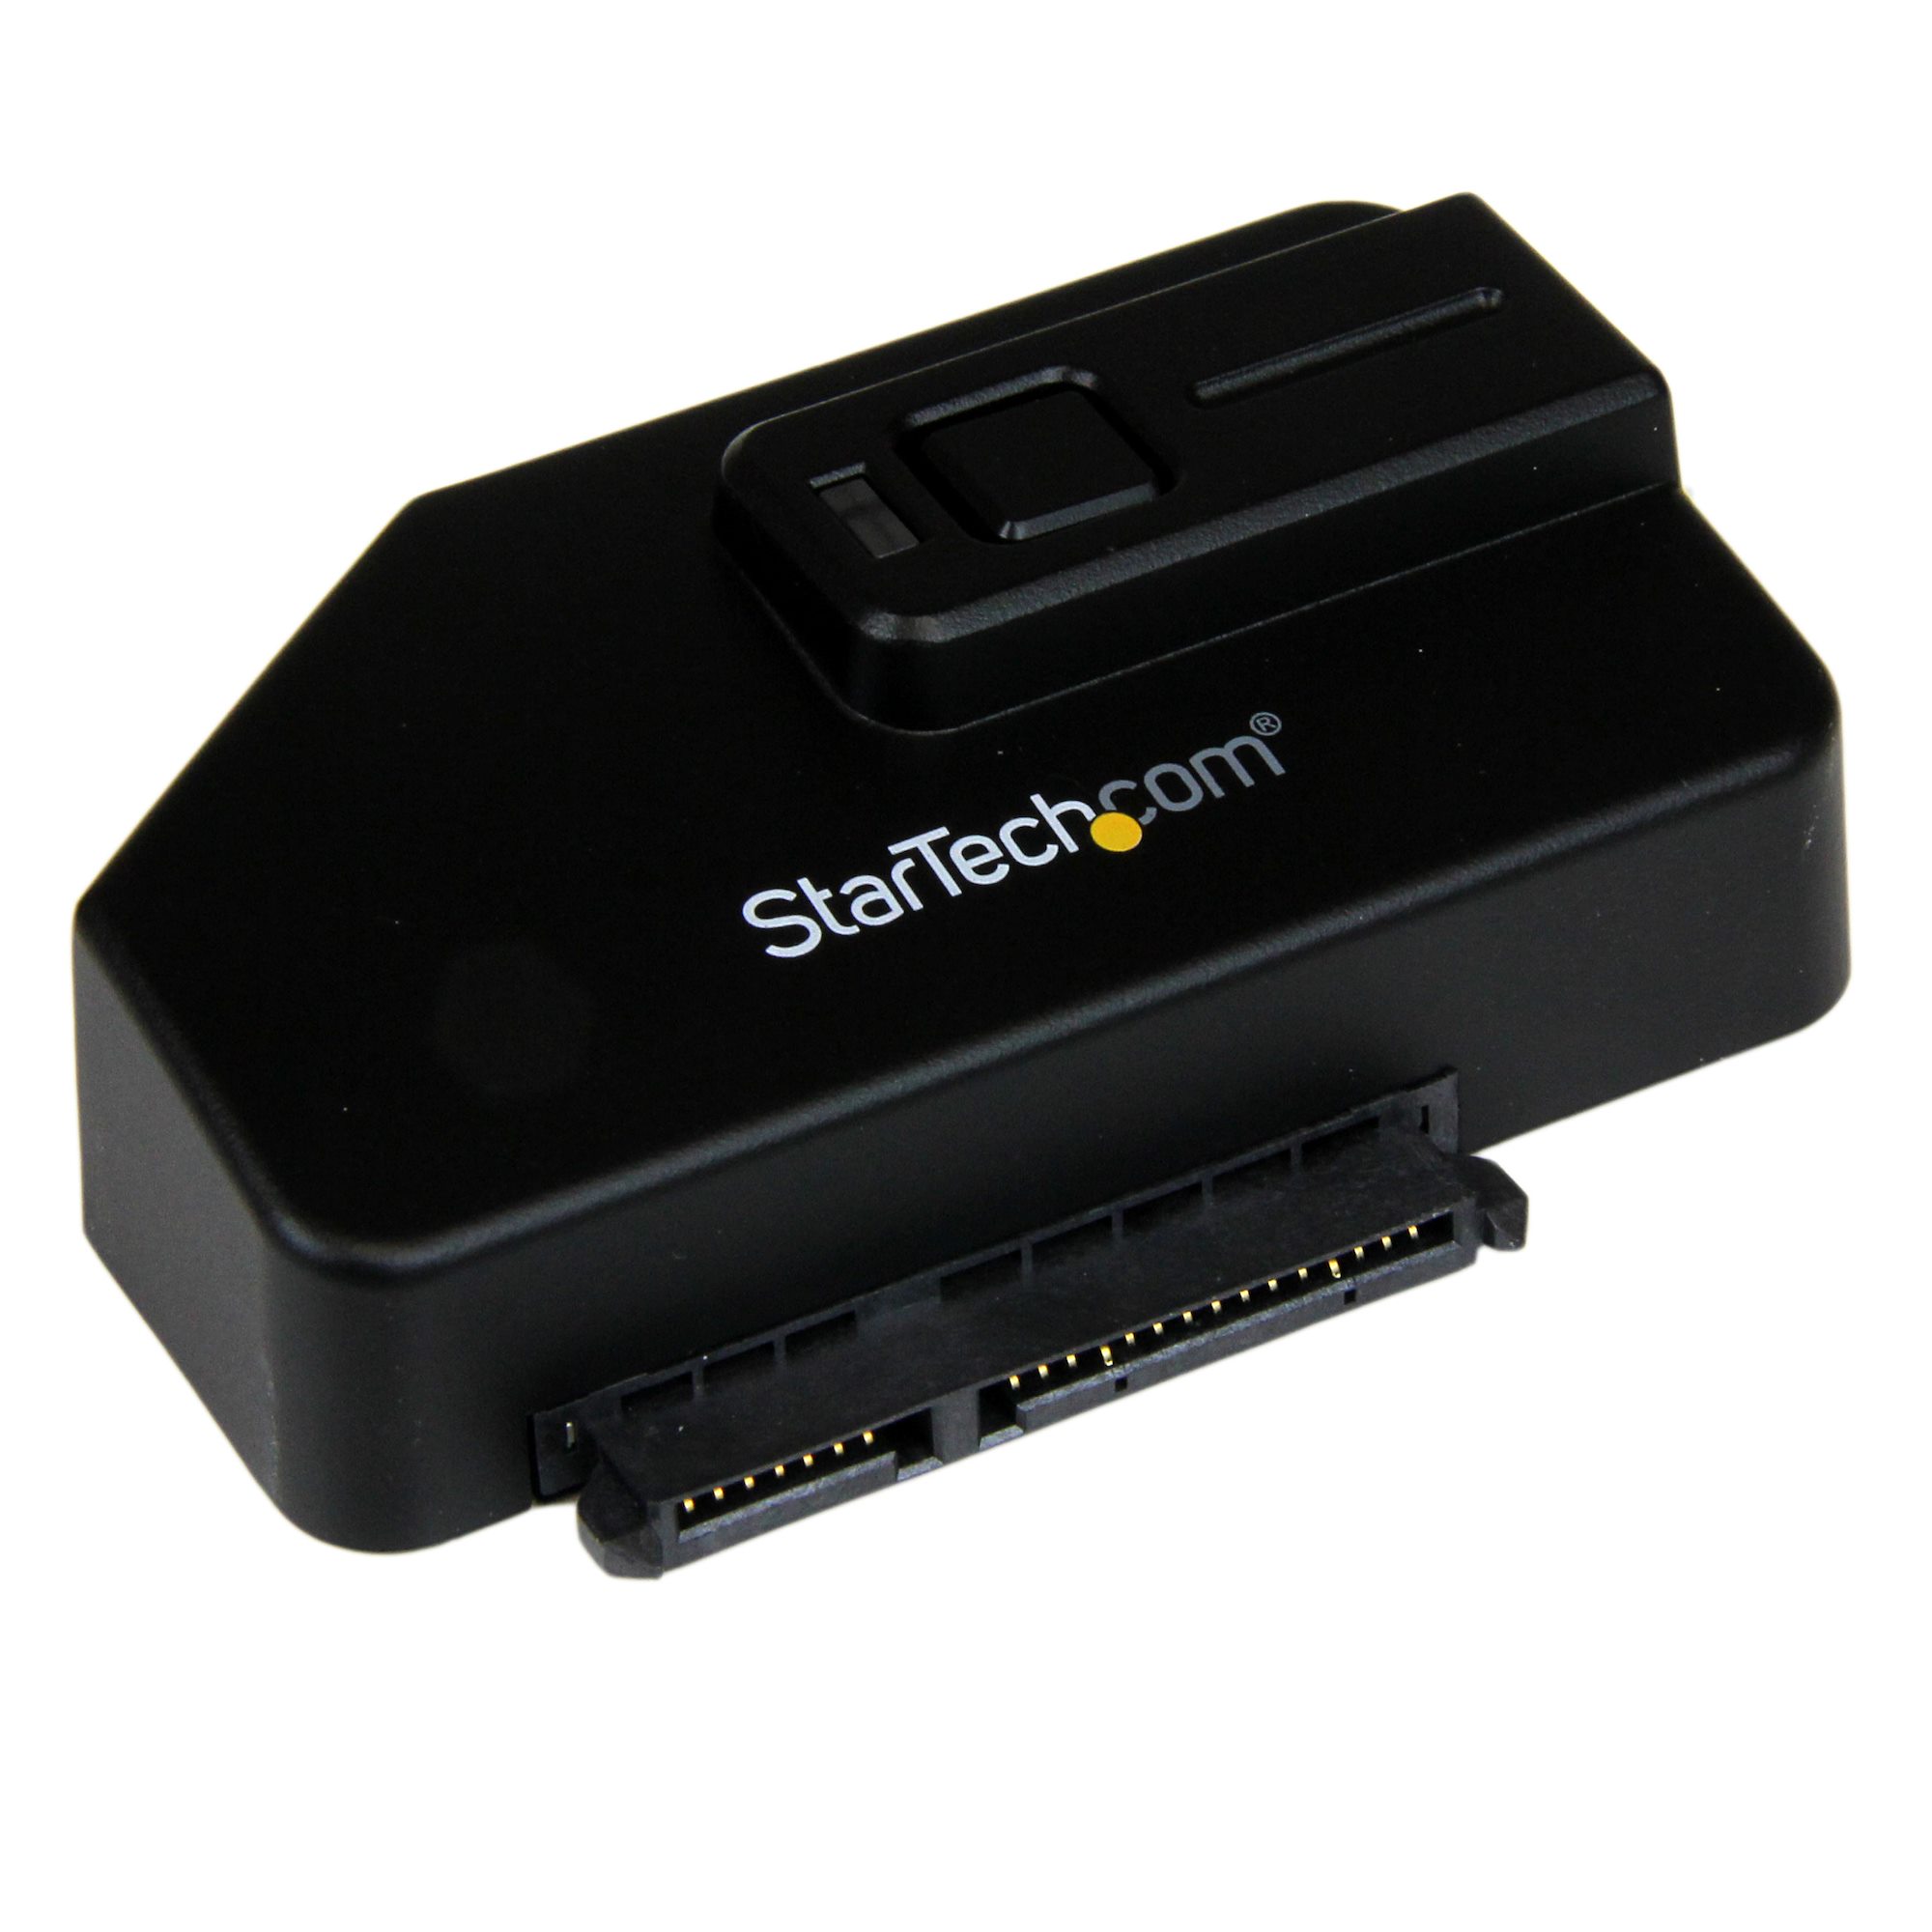 Voorzieningen Onzorgvuldigheid helpen USB 3.0 to SATA III Adapter for 2.5in or 3.5in Drives - Drive Adapters and  Drive Converters | StarTech.com